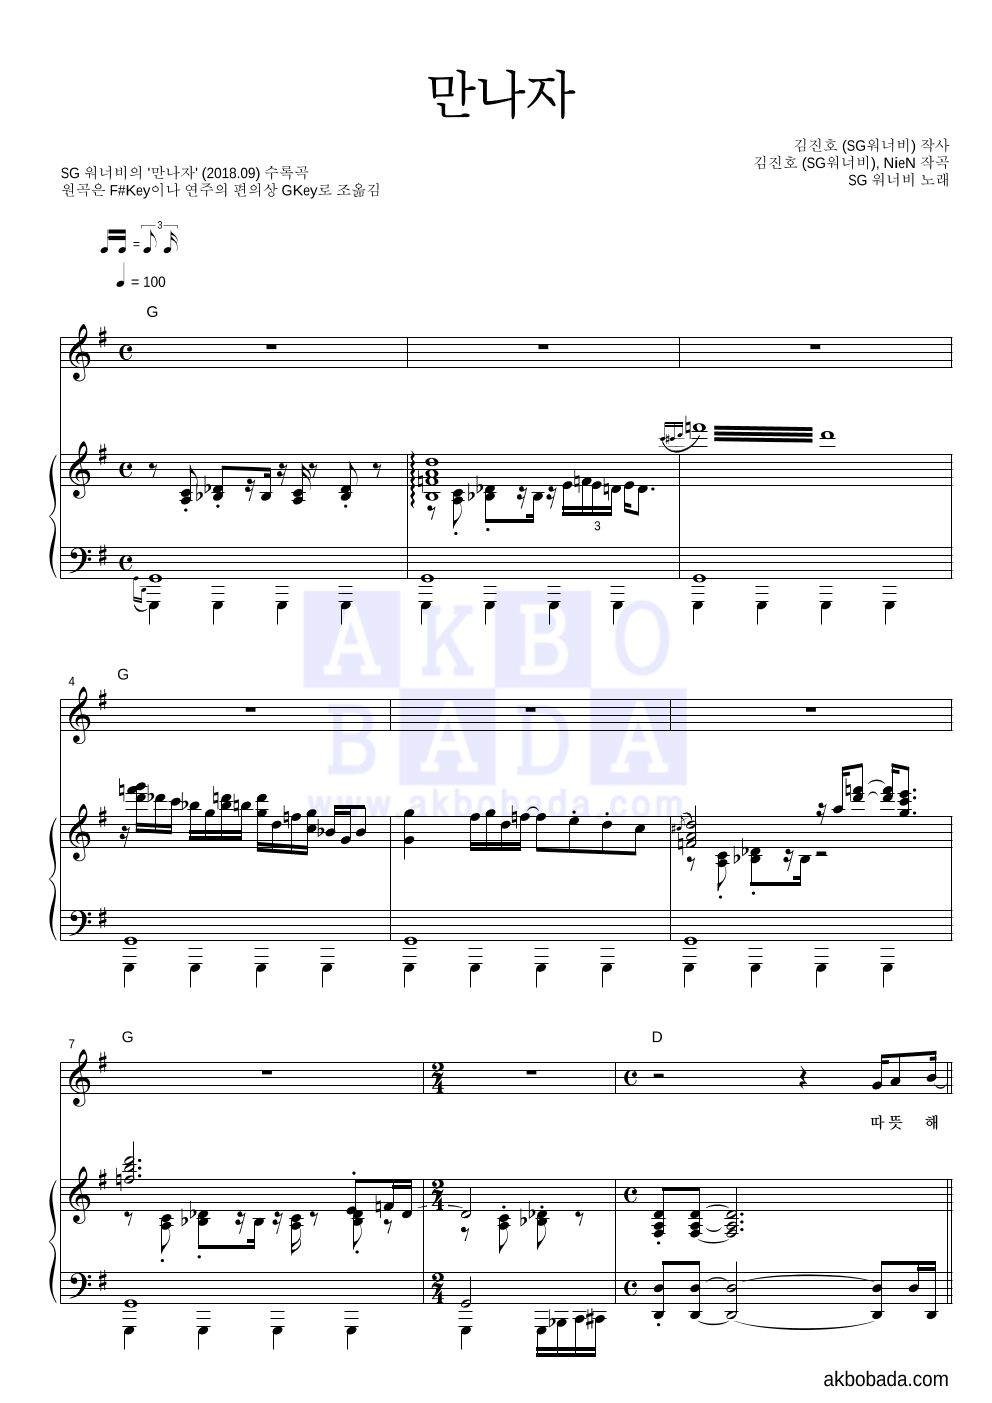 SG워너비 - 만나자 피아노 3단 악보 